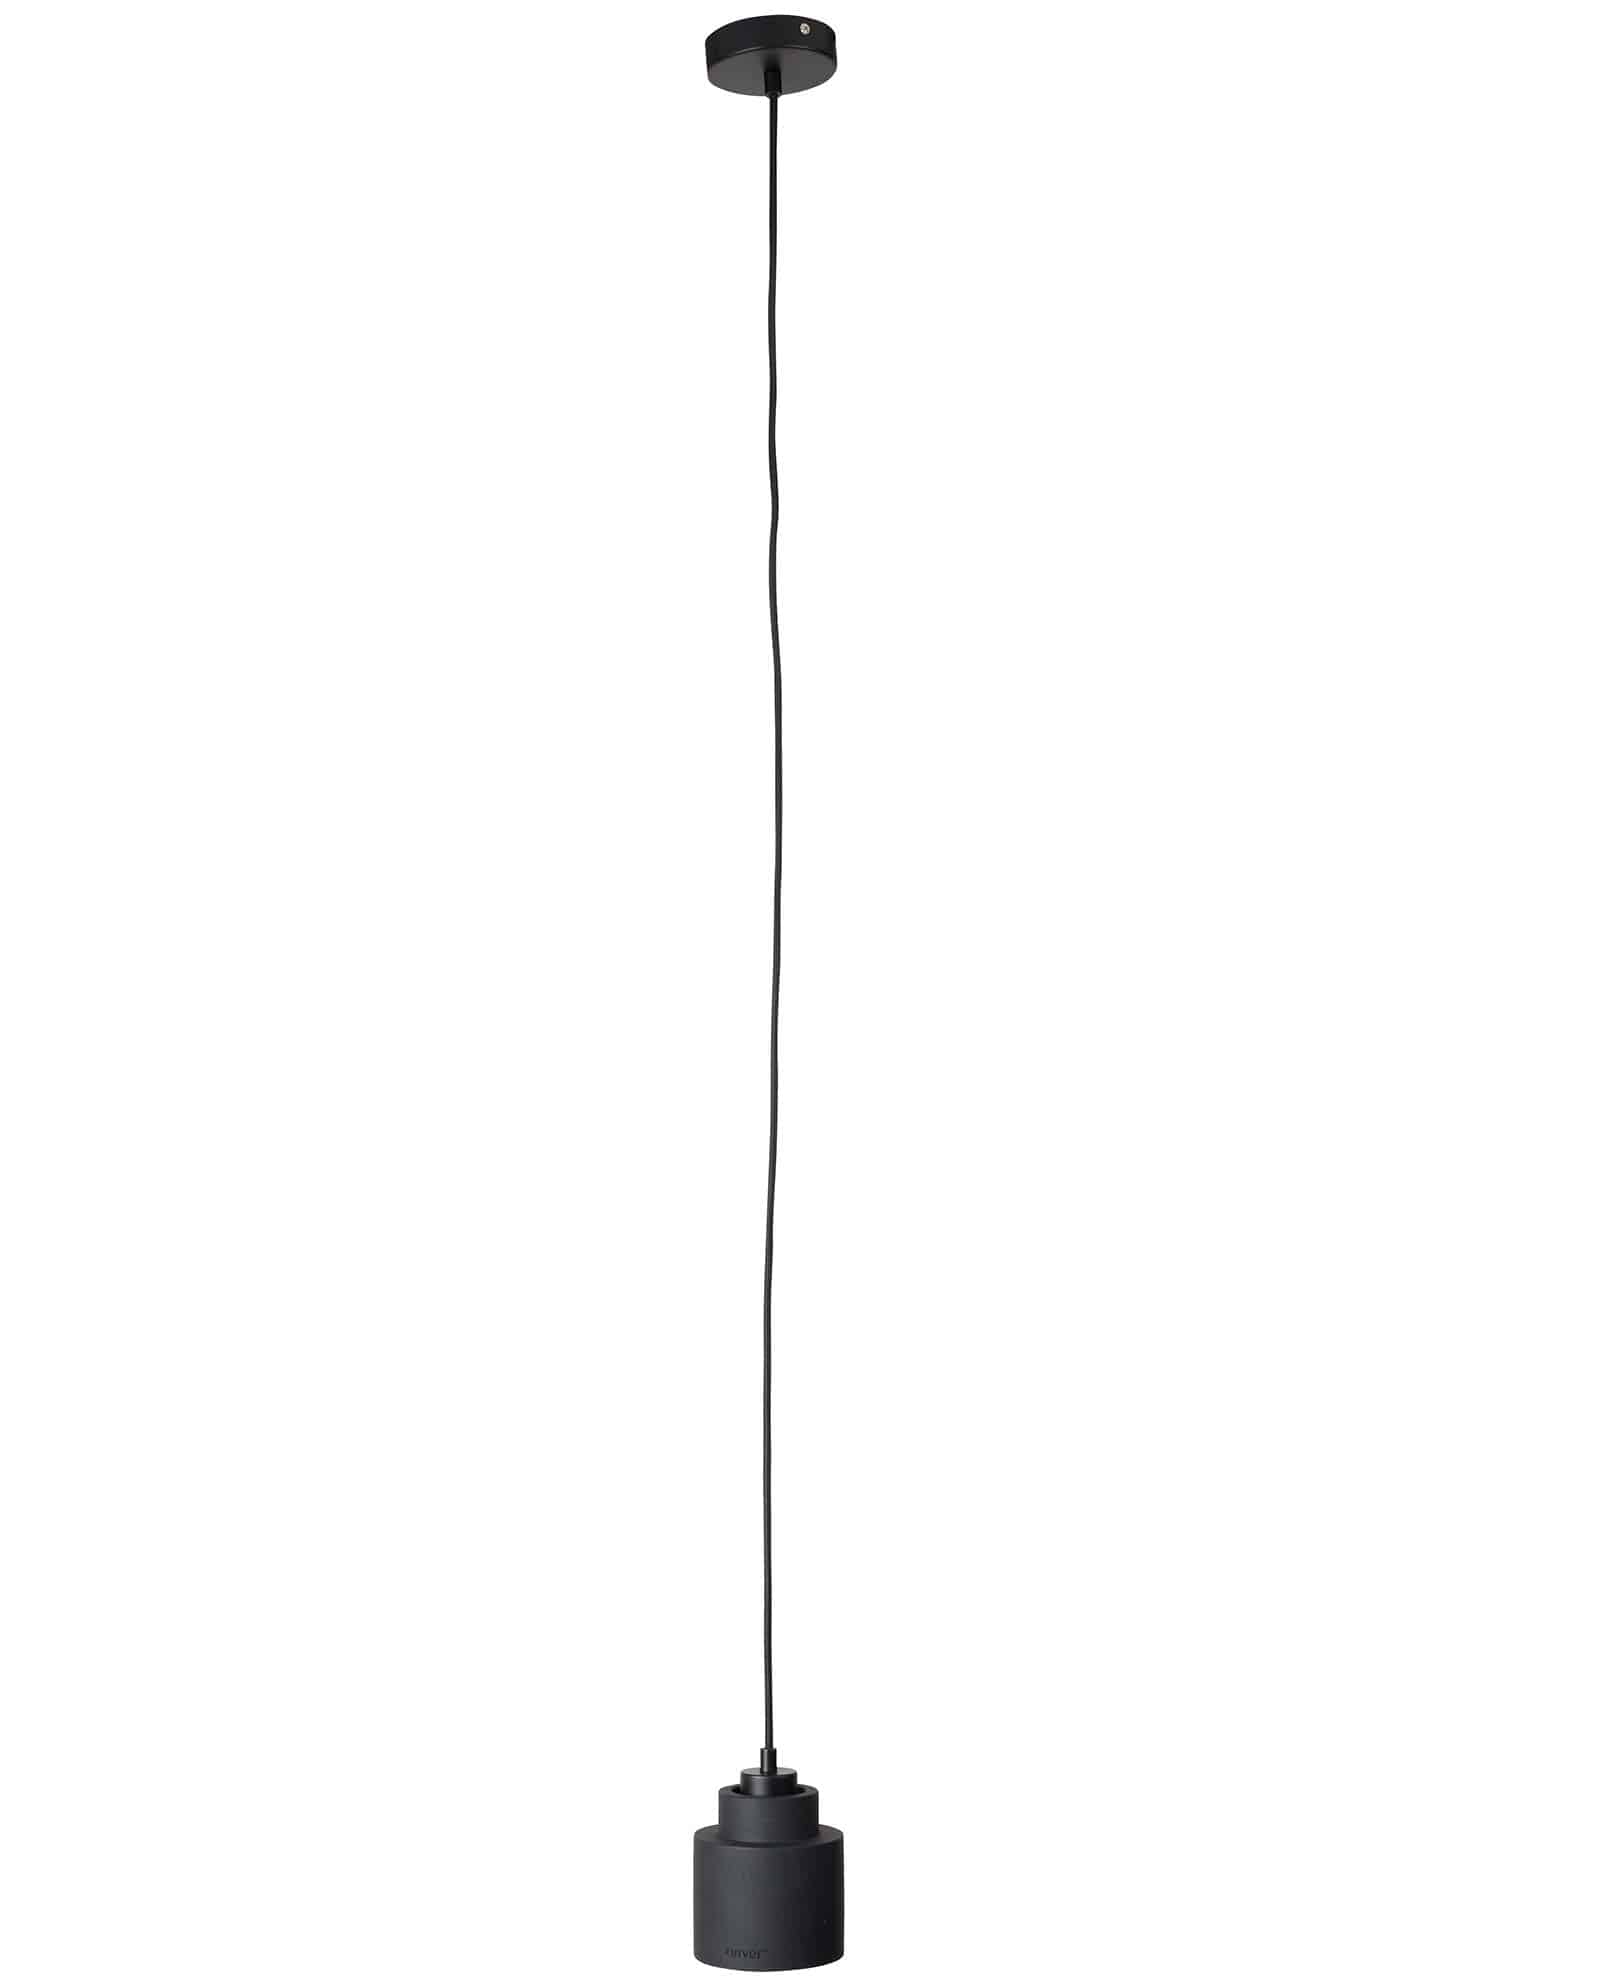 Left hanglamp by Designshopp